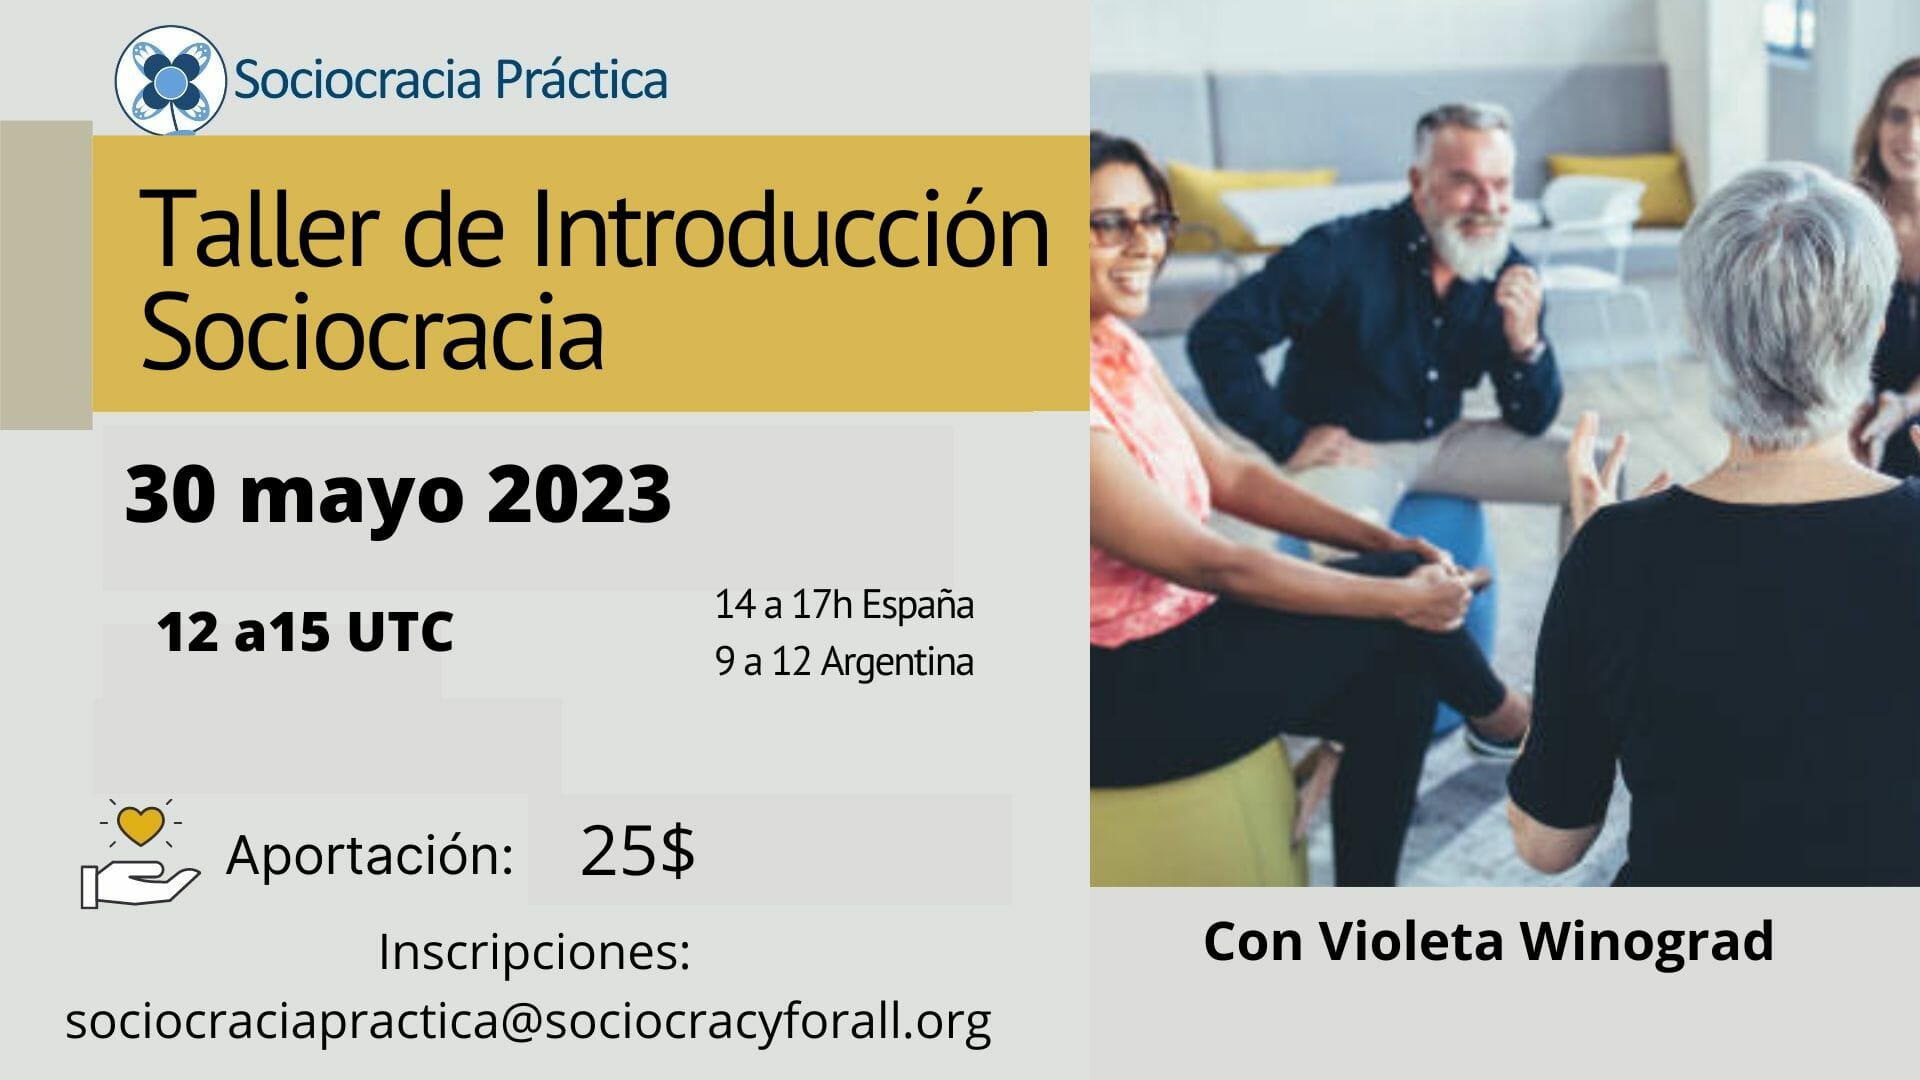 Taller de introducción a la sociocracia - Mayo 2023 - Sociocracia Práctica